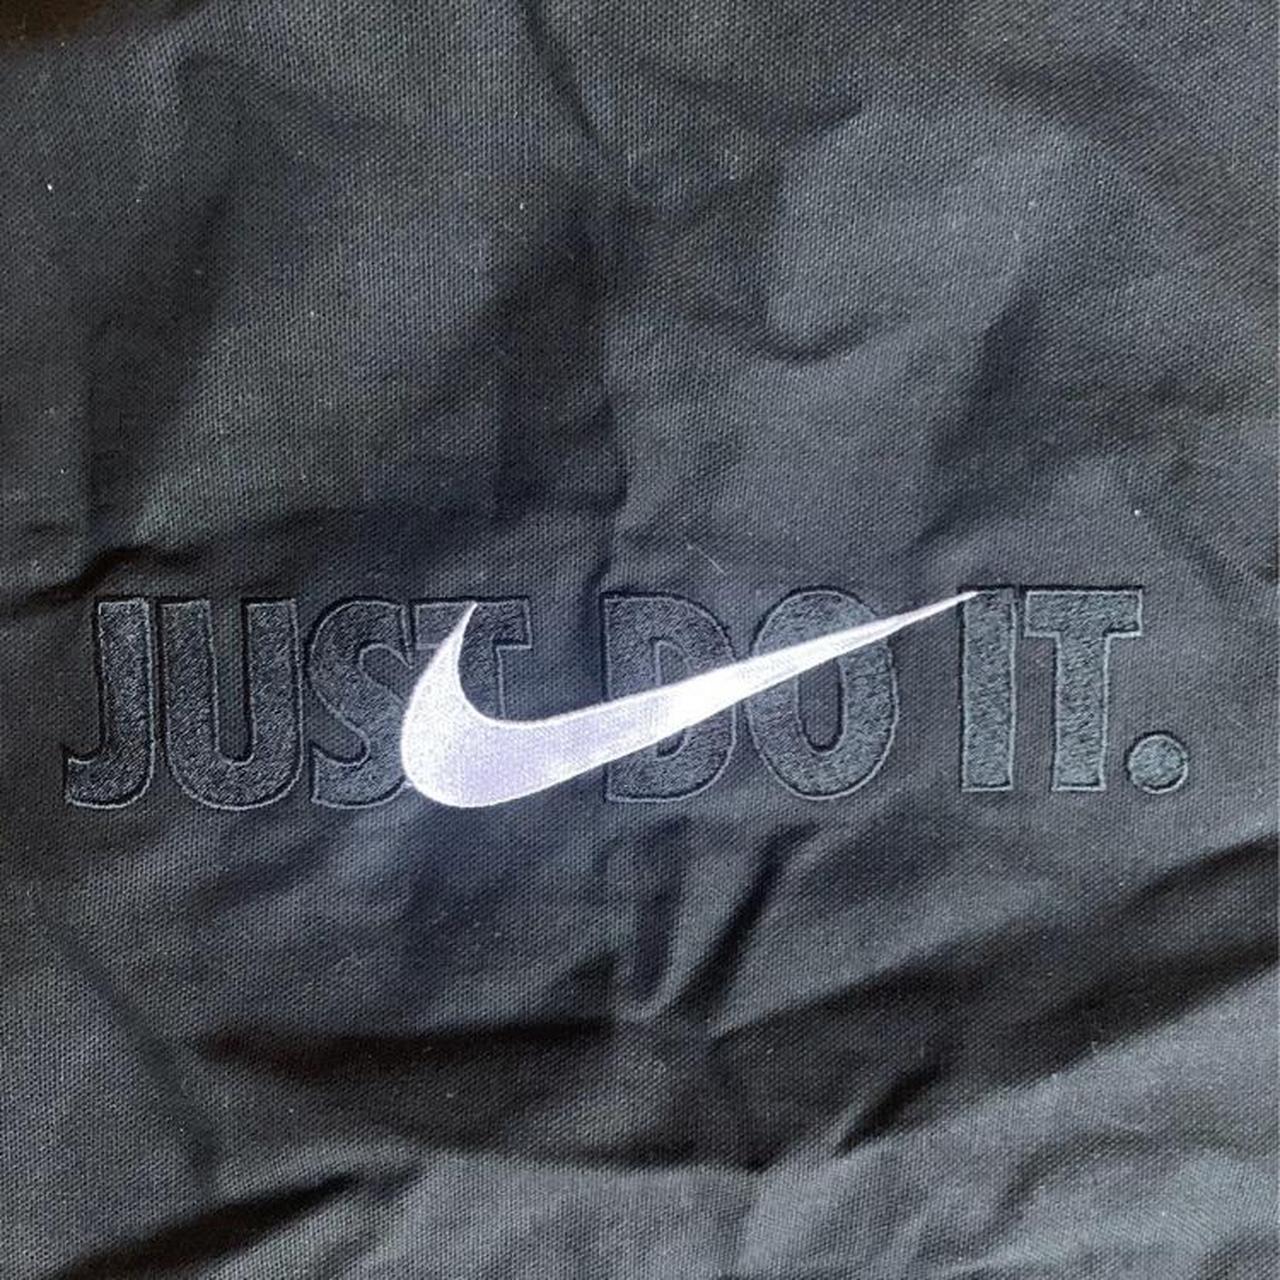 Vintage 90s Nike Limited Edition Black Embroidered... - Depop